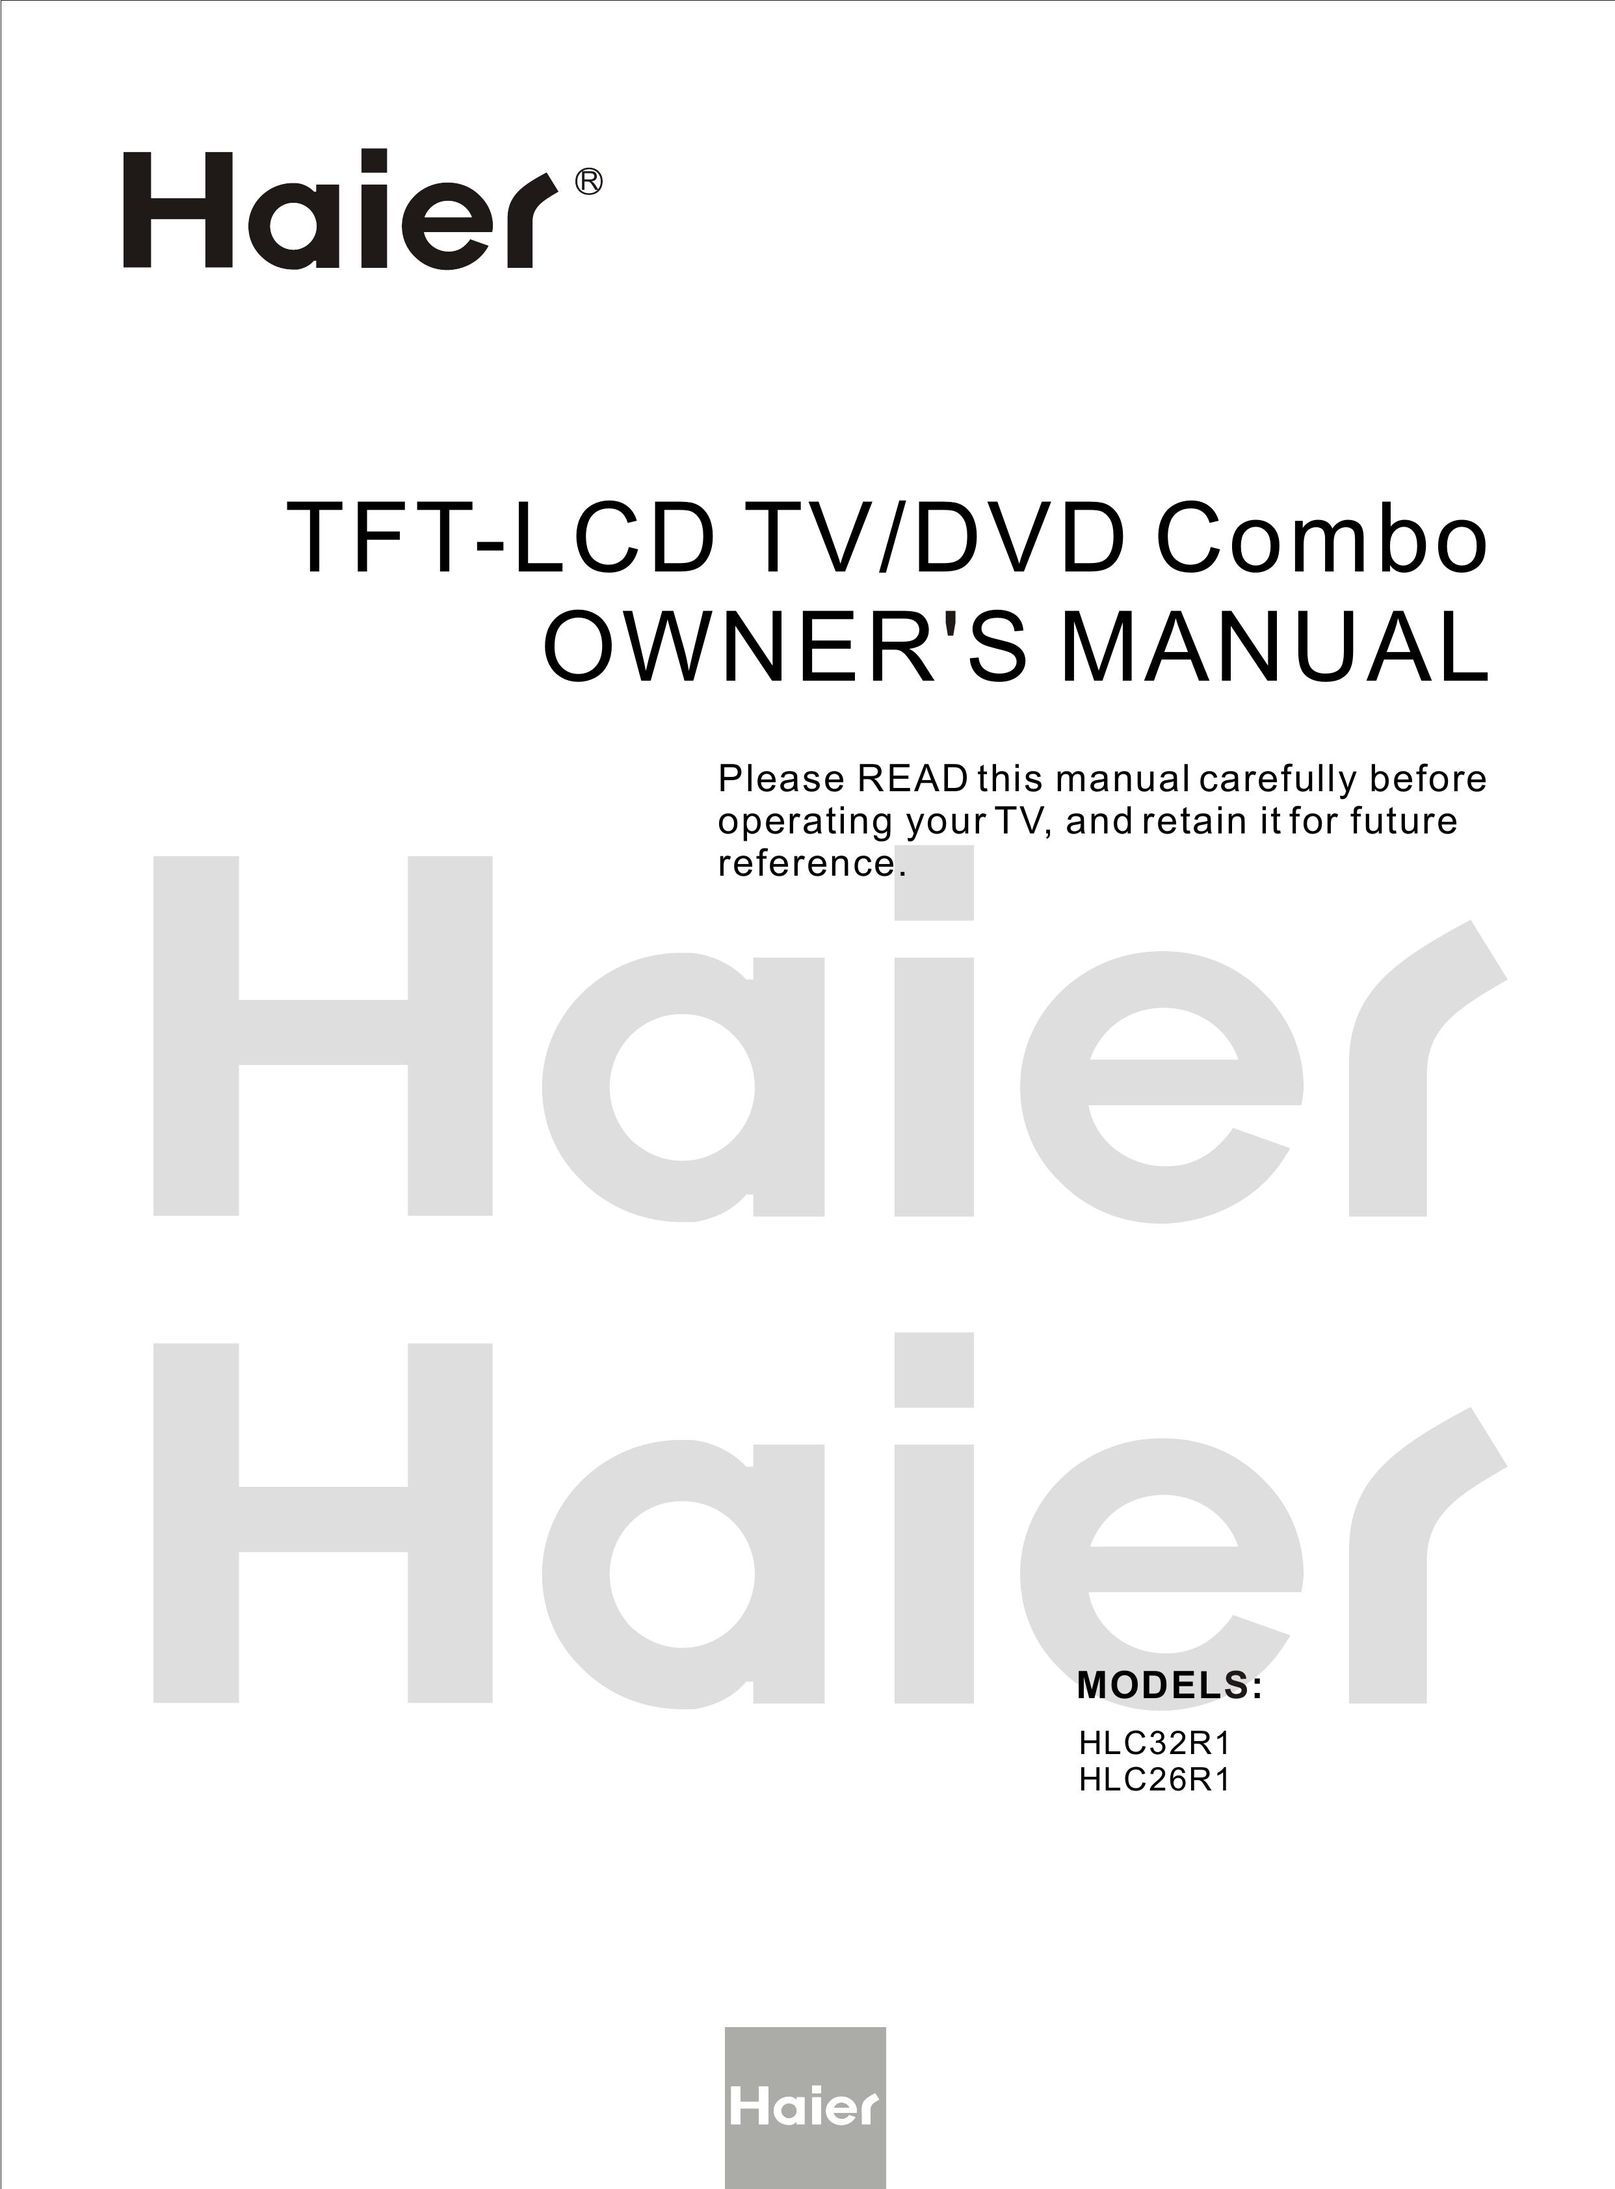 Haier HLC26R1 TV DVD Combo User Manual